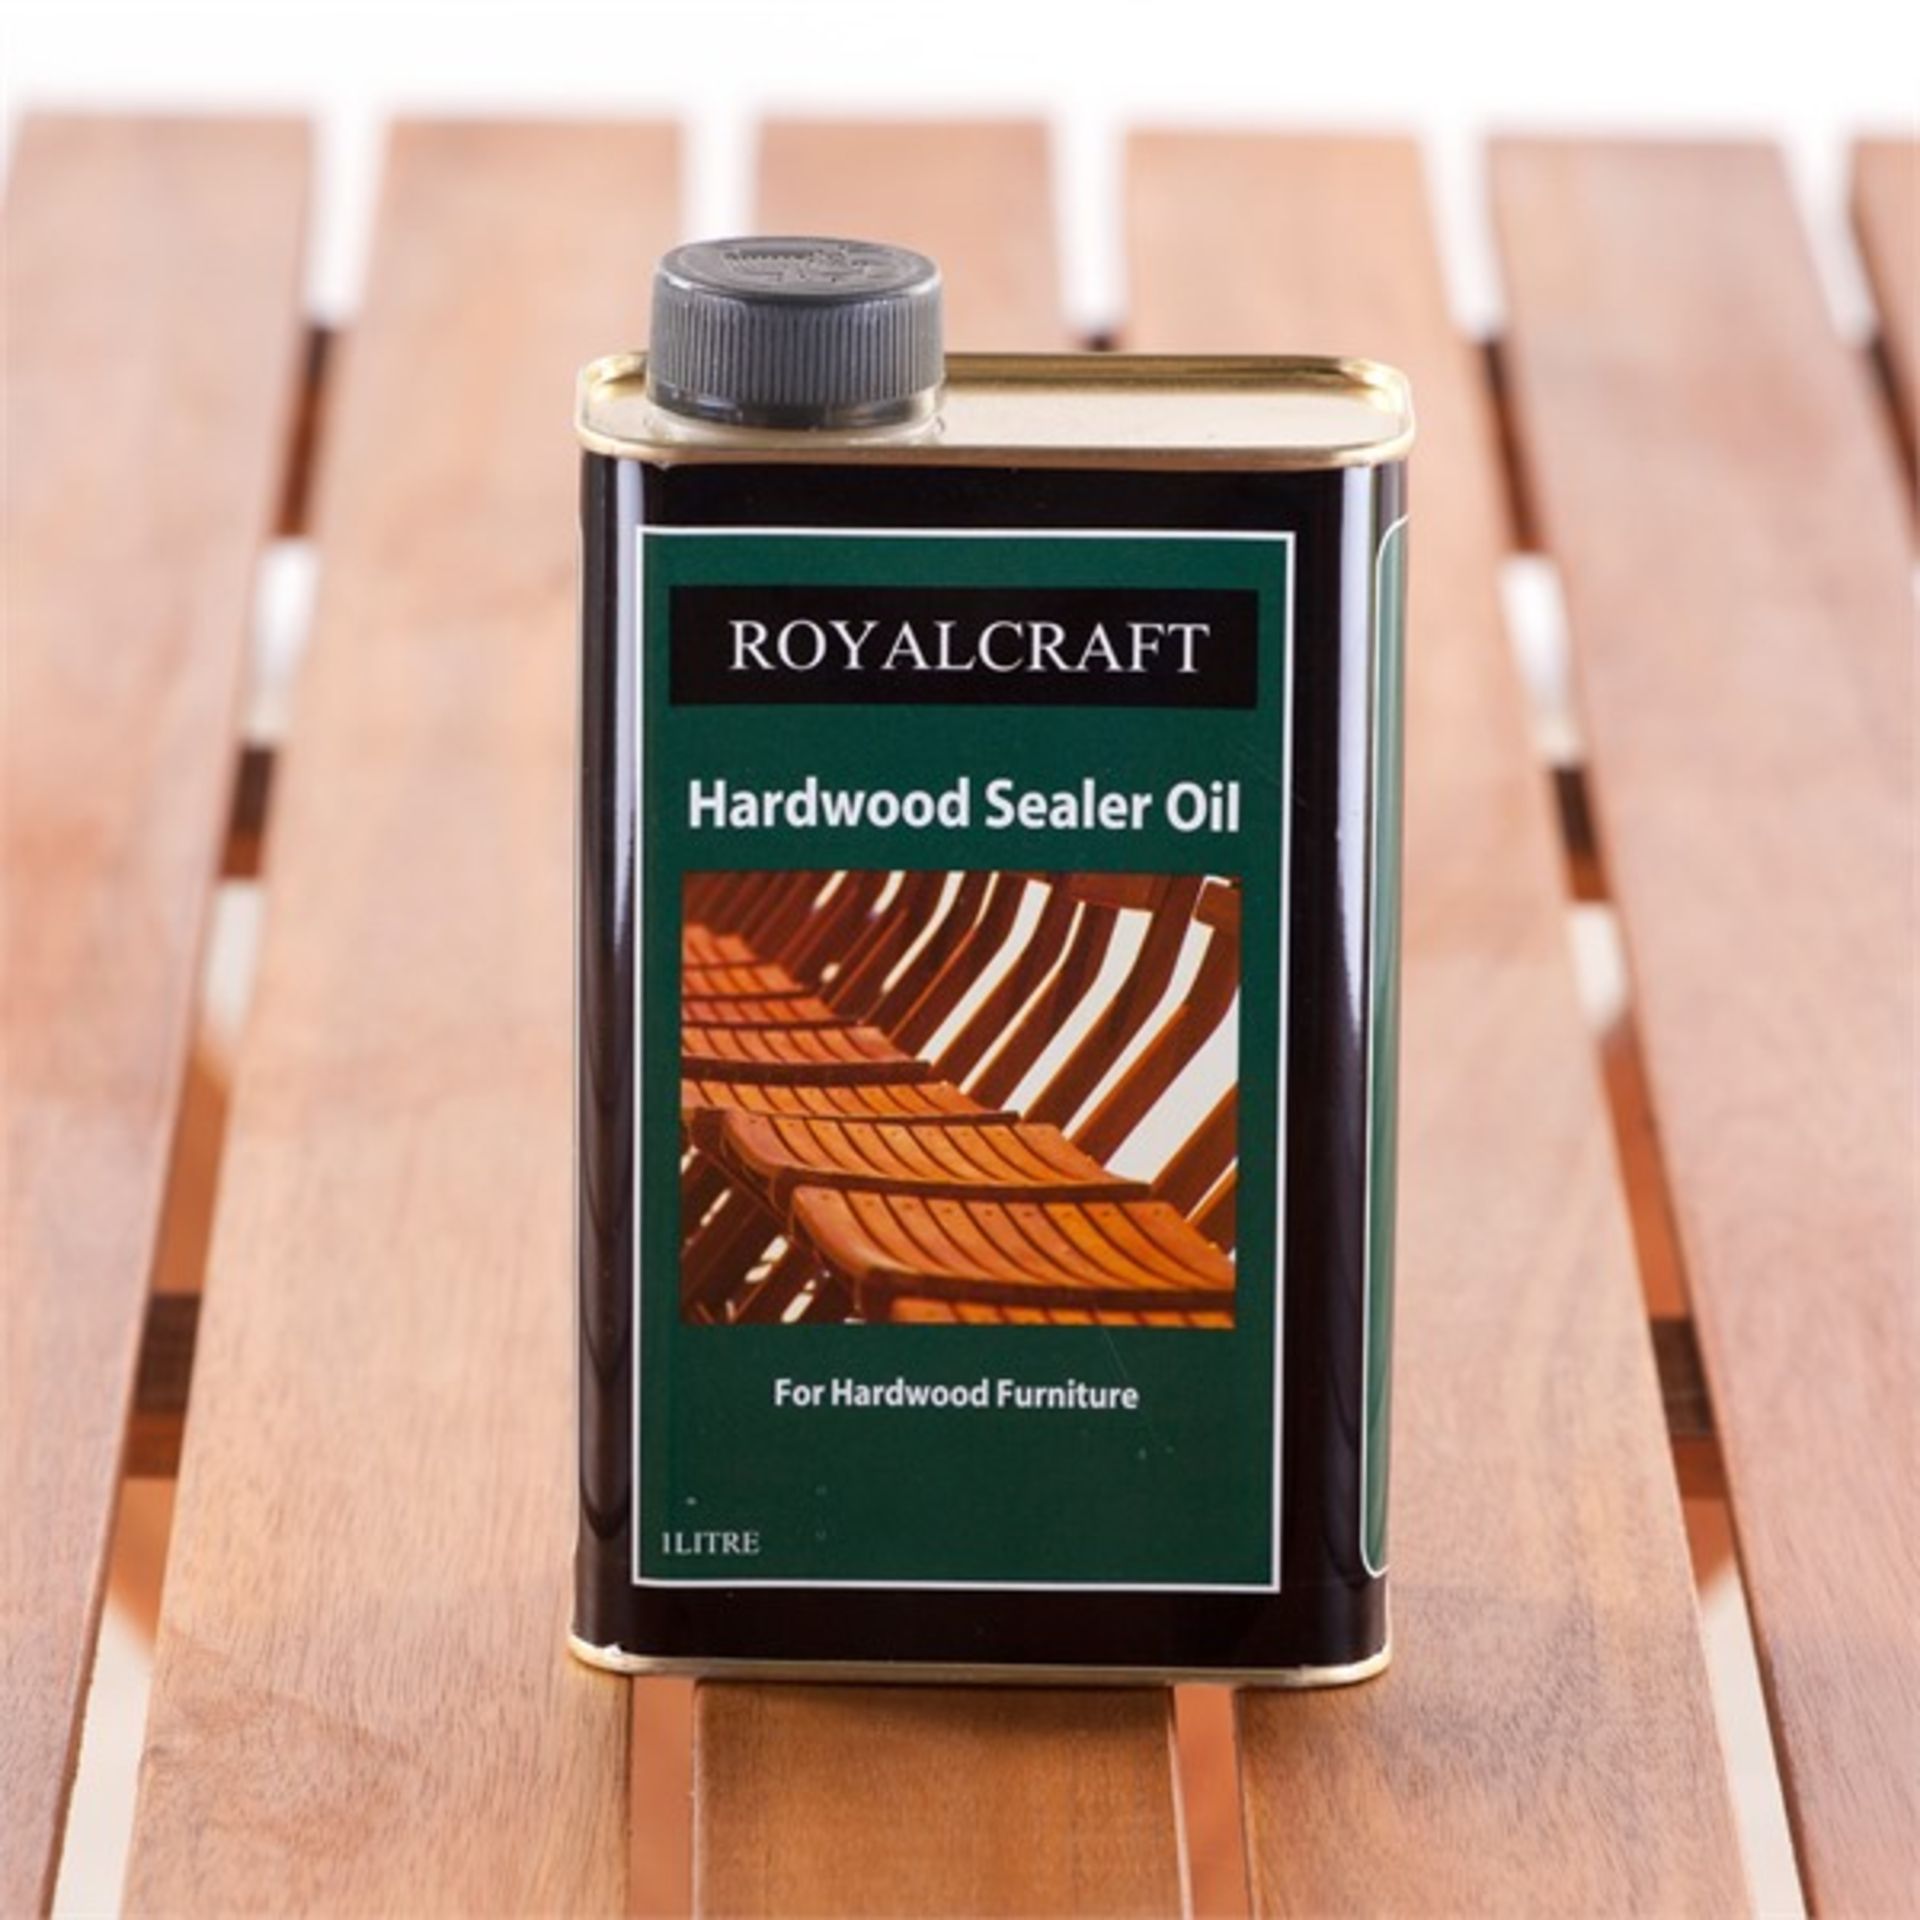 V Brand New Royal Craft 1Ltr Hardwood Sealer Oil For Hardwood Furniture - eBay Price £13.55